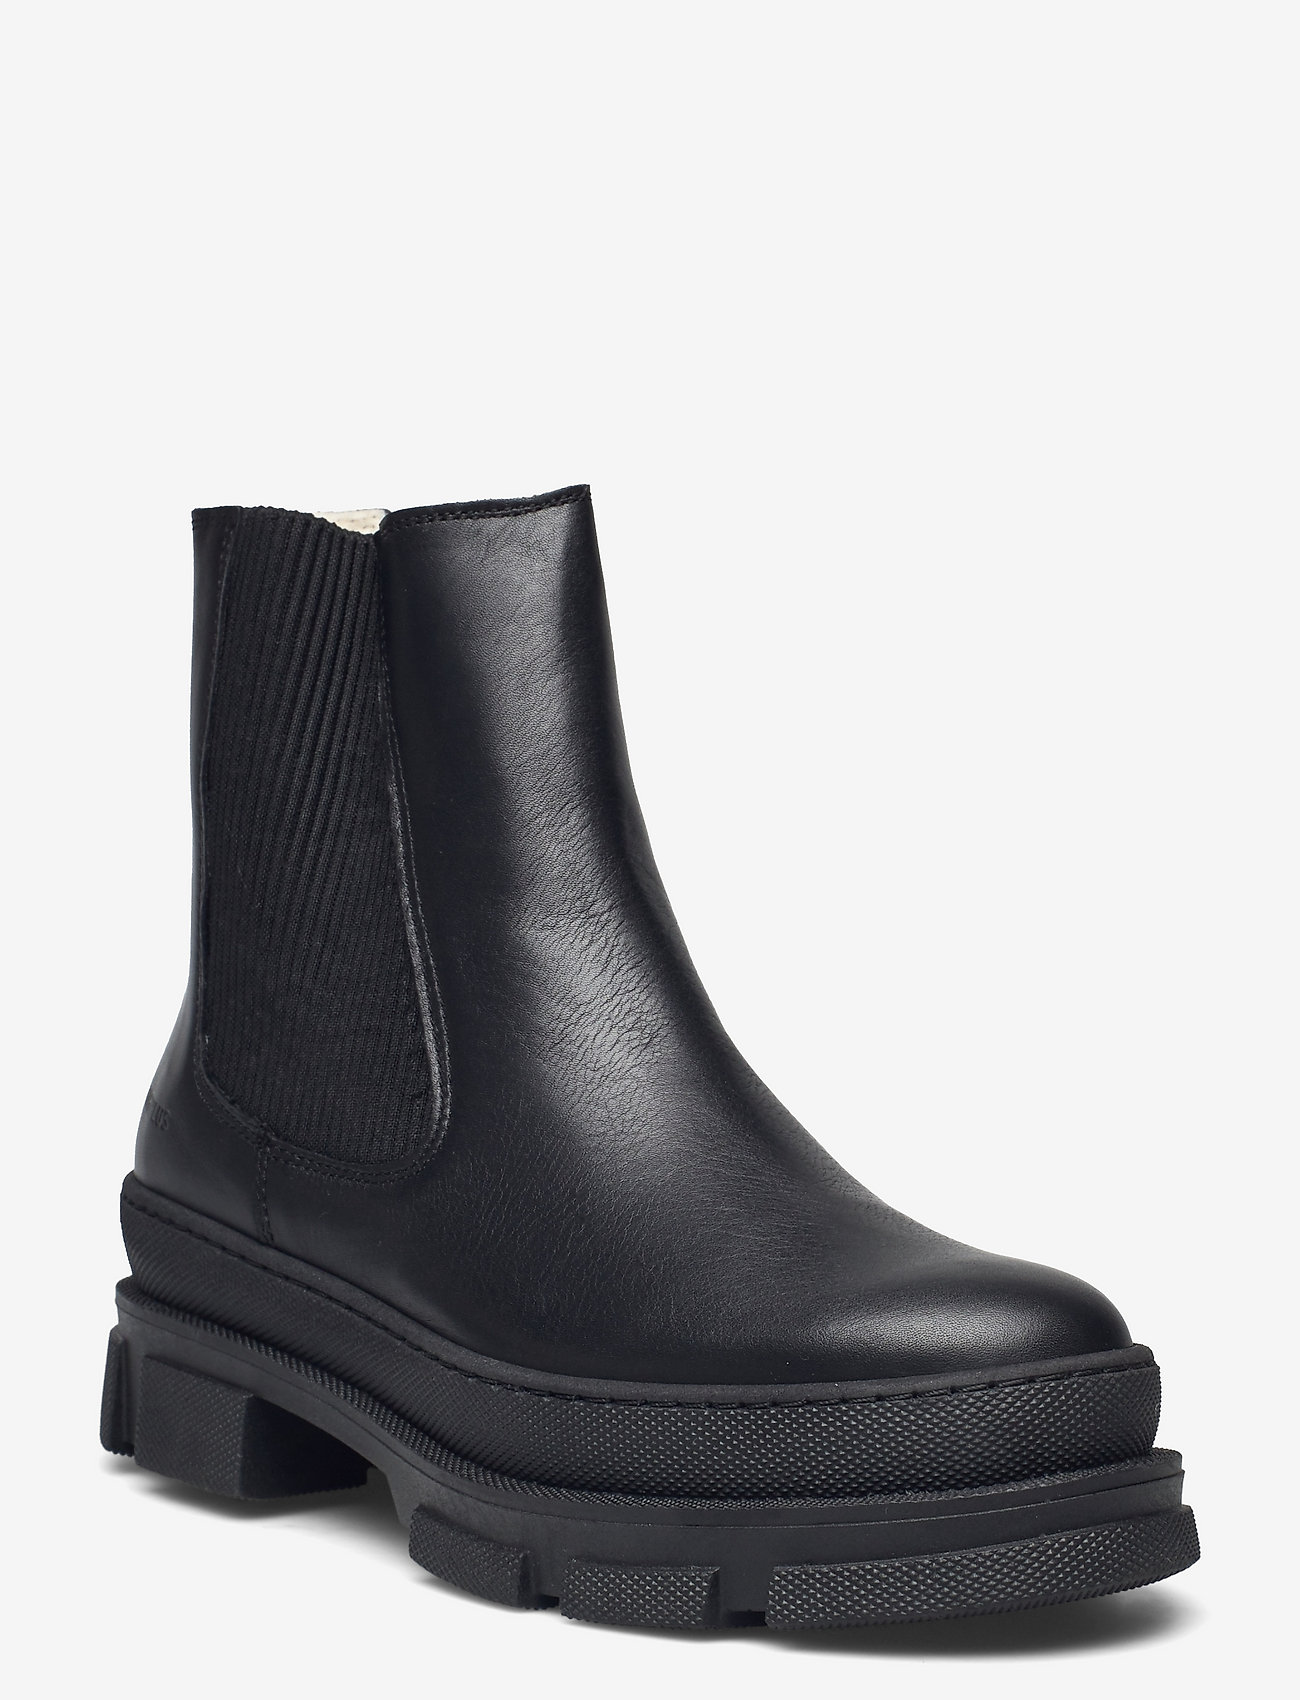 ANGULUS - Boots - flat - chelsea boots - 1604/019 black/black - 0